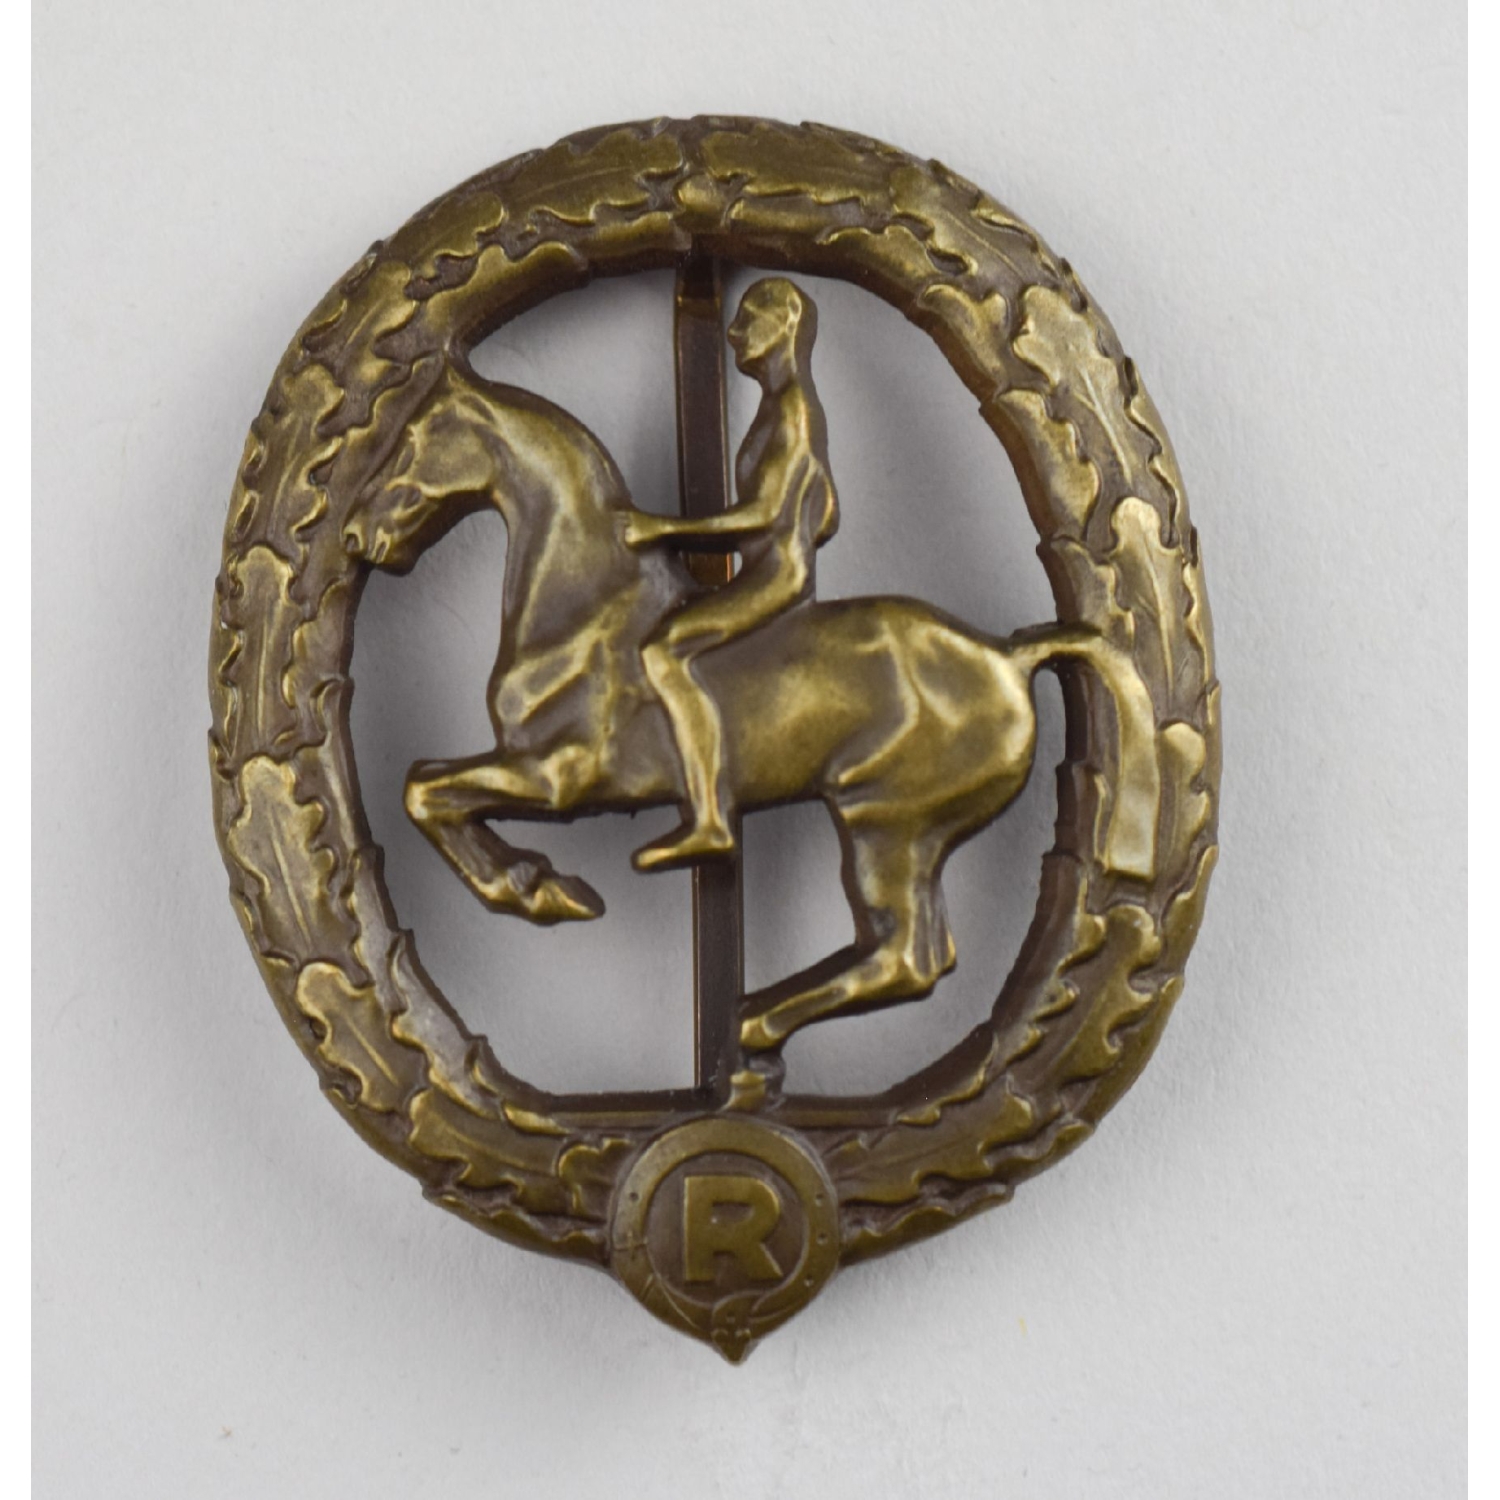 Deutsches Reiterabzeichen 3. Klasse Bronze 1930 Herst. L. Chr. Lauer, Nürnberg-Berlin